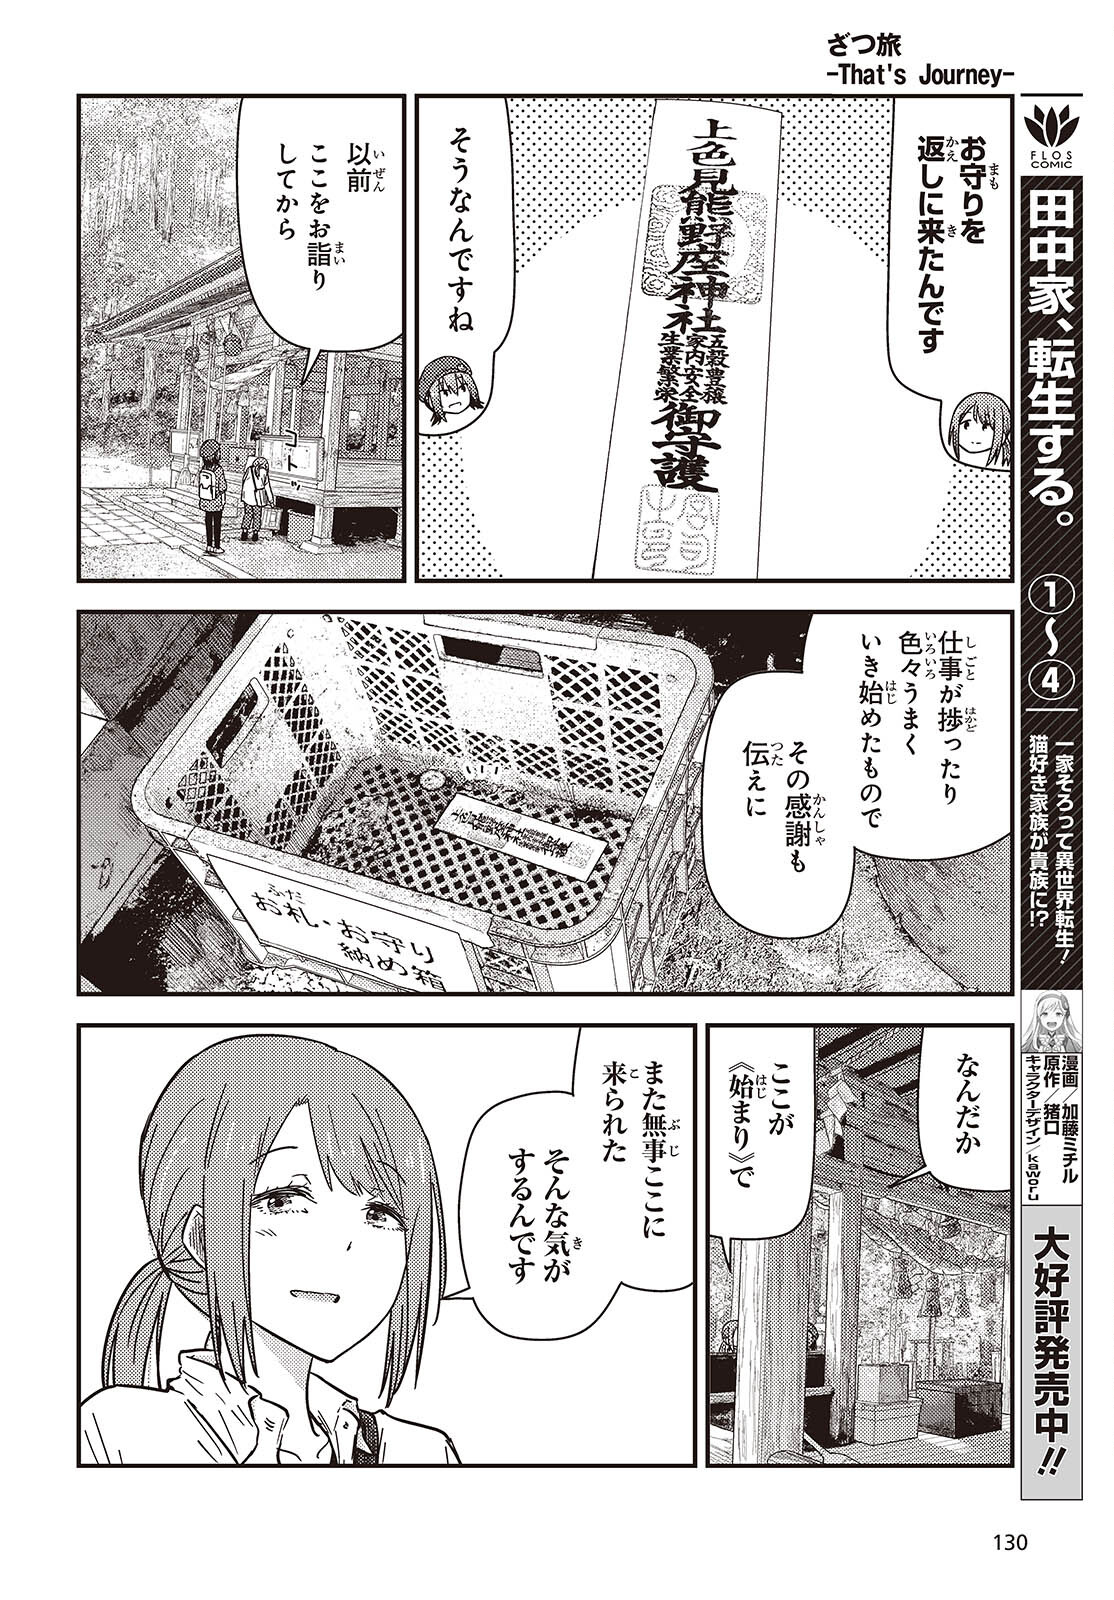 ざつ旅-That's Journey- 第35話 - Page 20